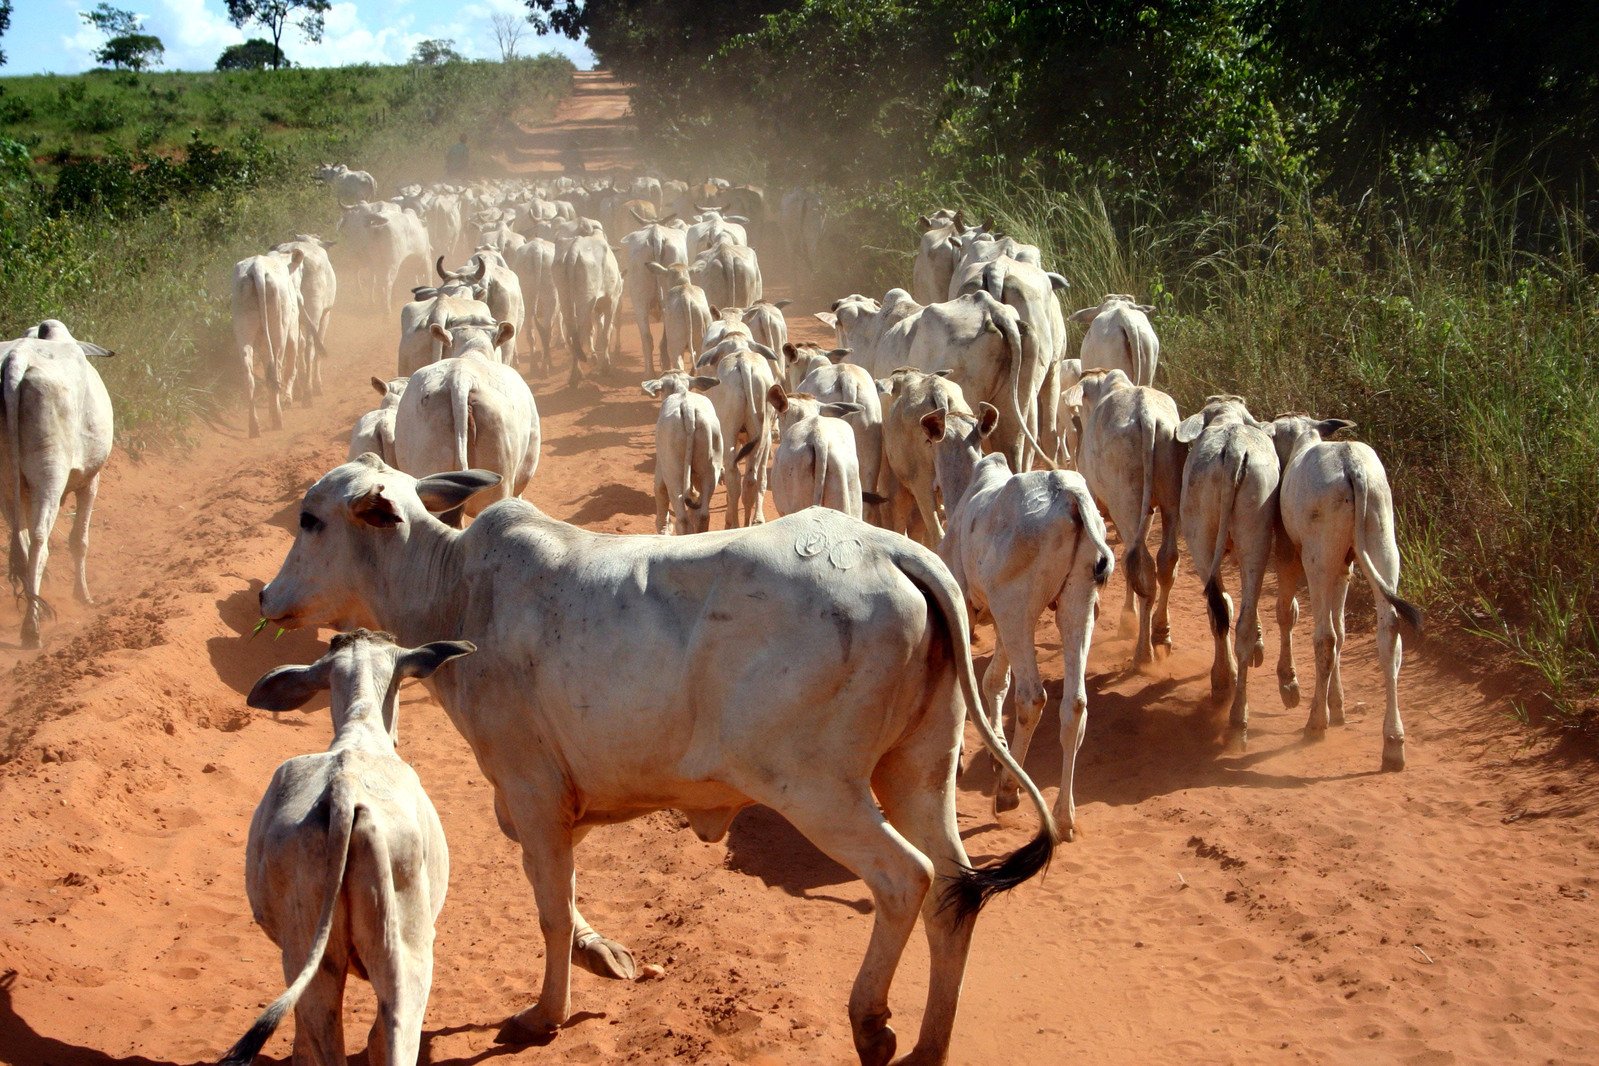 herd of cows walking on dirt road near bush